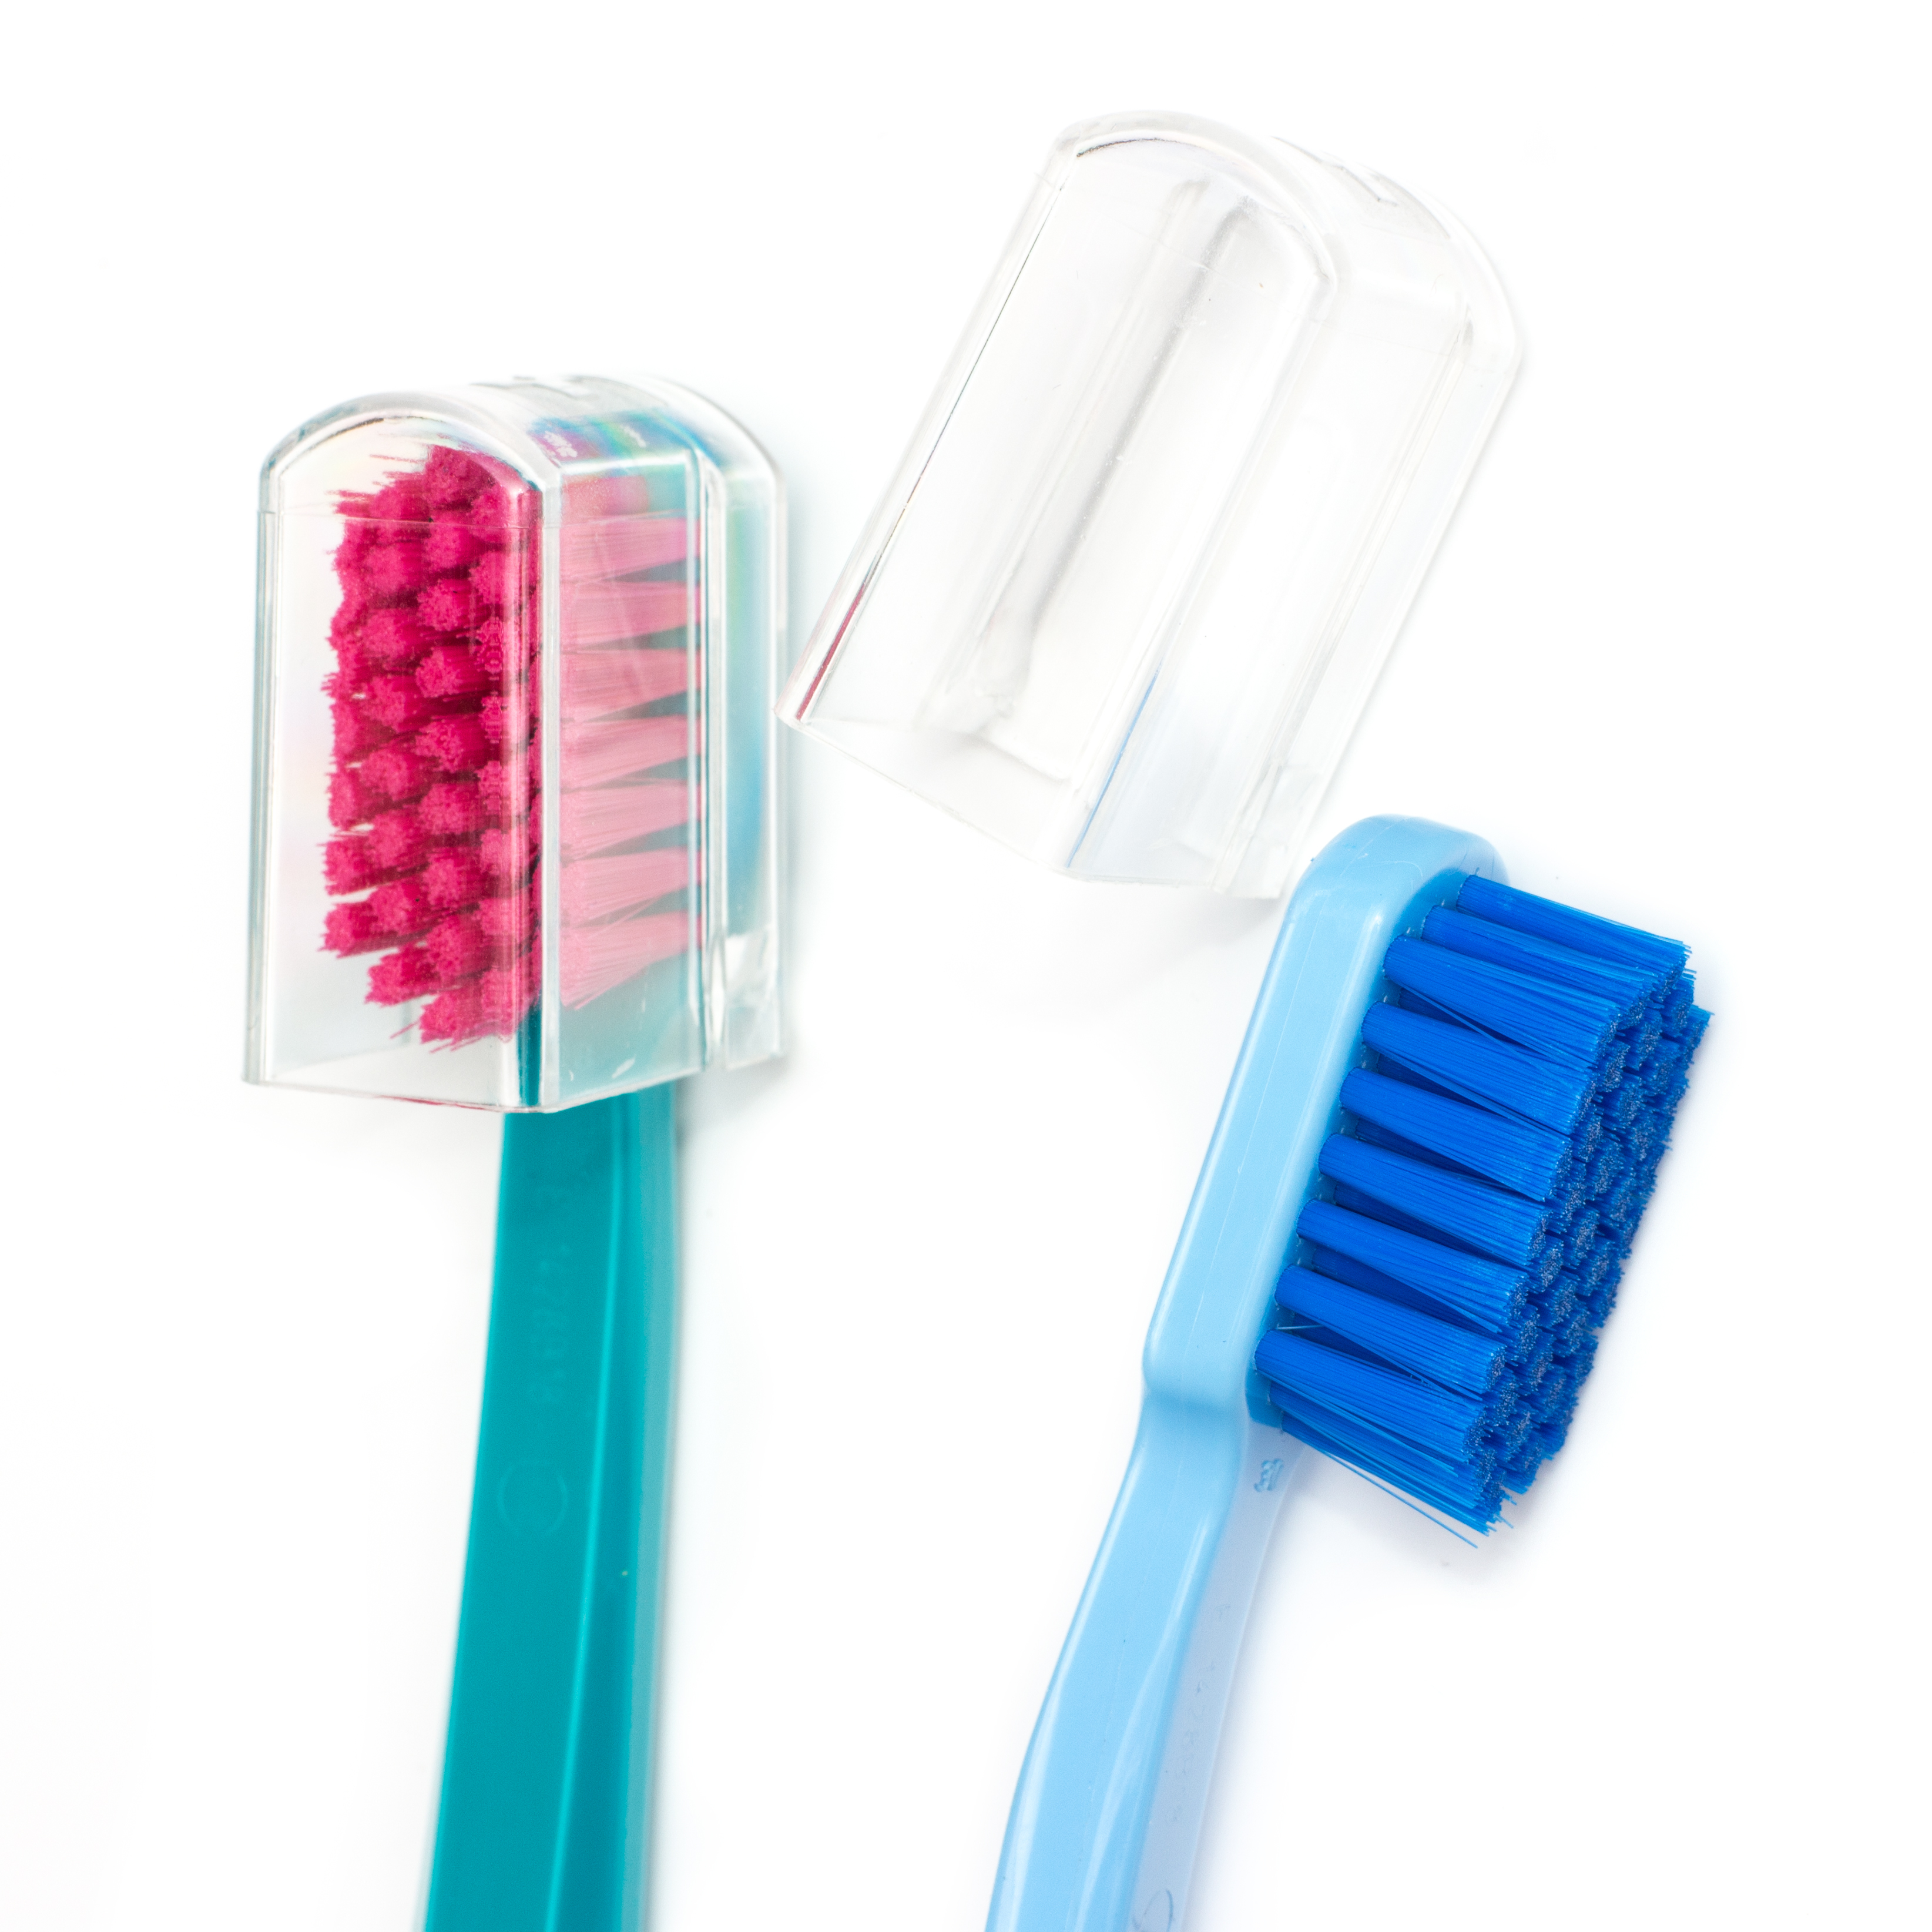 Ультра софт зубная щетка курапрокс ирригатор для полости рта купить в спб